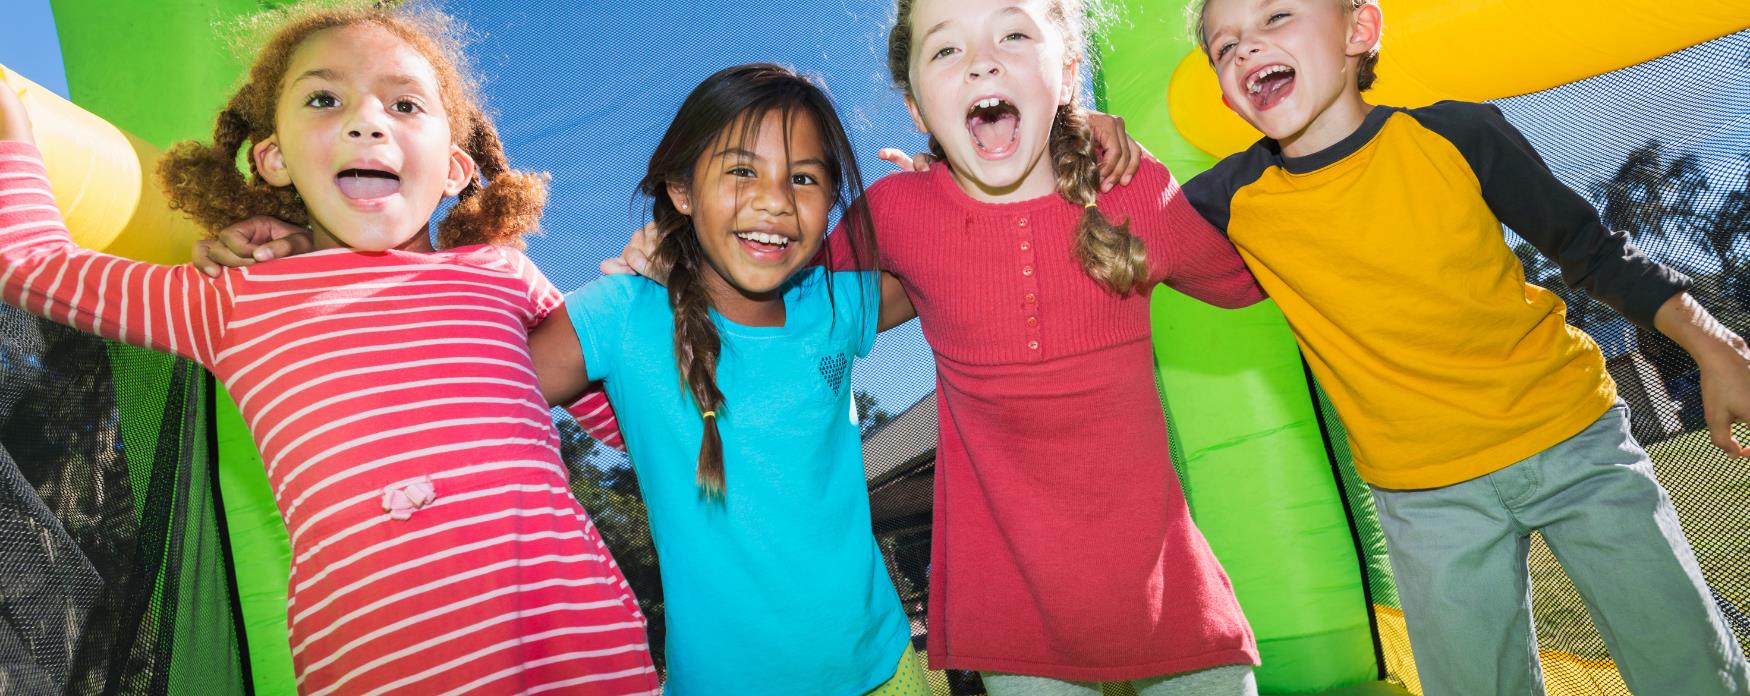 Multi-ethnic kids on bouncy castle